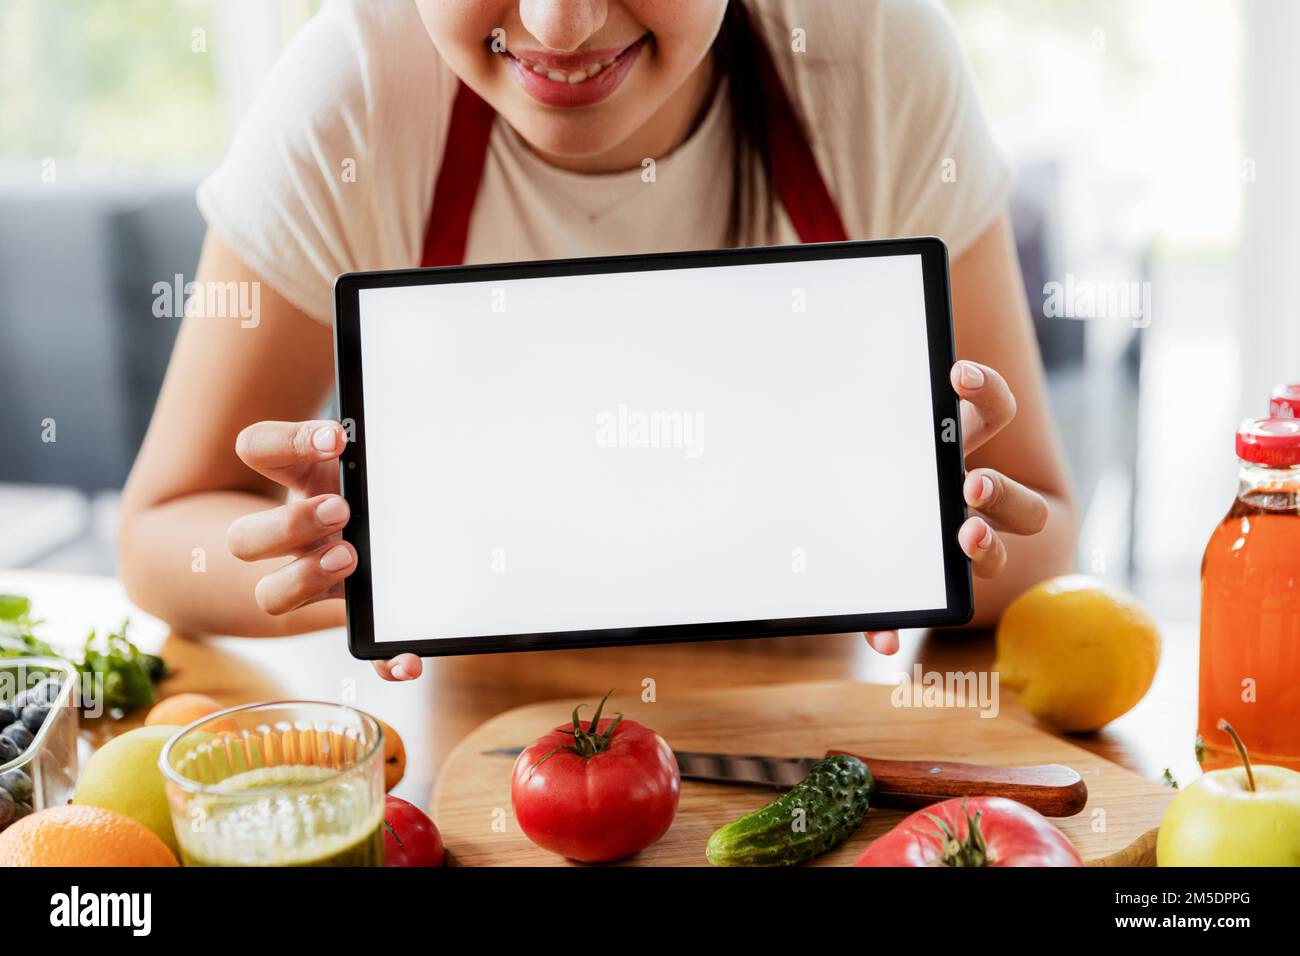 Donna mani tenere tablet, mostrando bianco vuoto schermo mockup in cucina, mentre sano verdure prima colazione cucina. Shopping online di alimentari. Annunci per le app di consegna, libro di cuoco, ricette per i piani dietetici Foto Stock